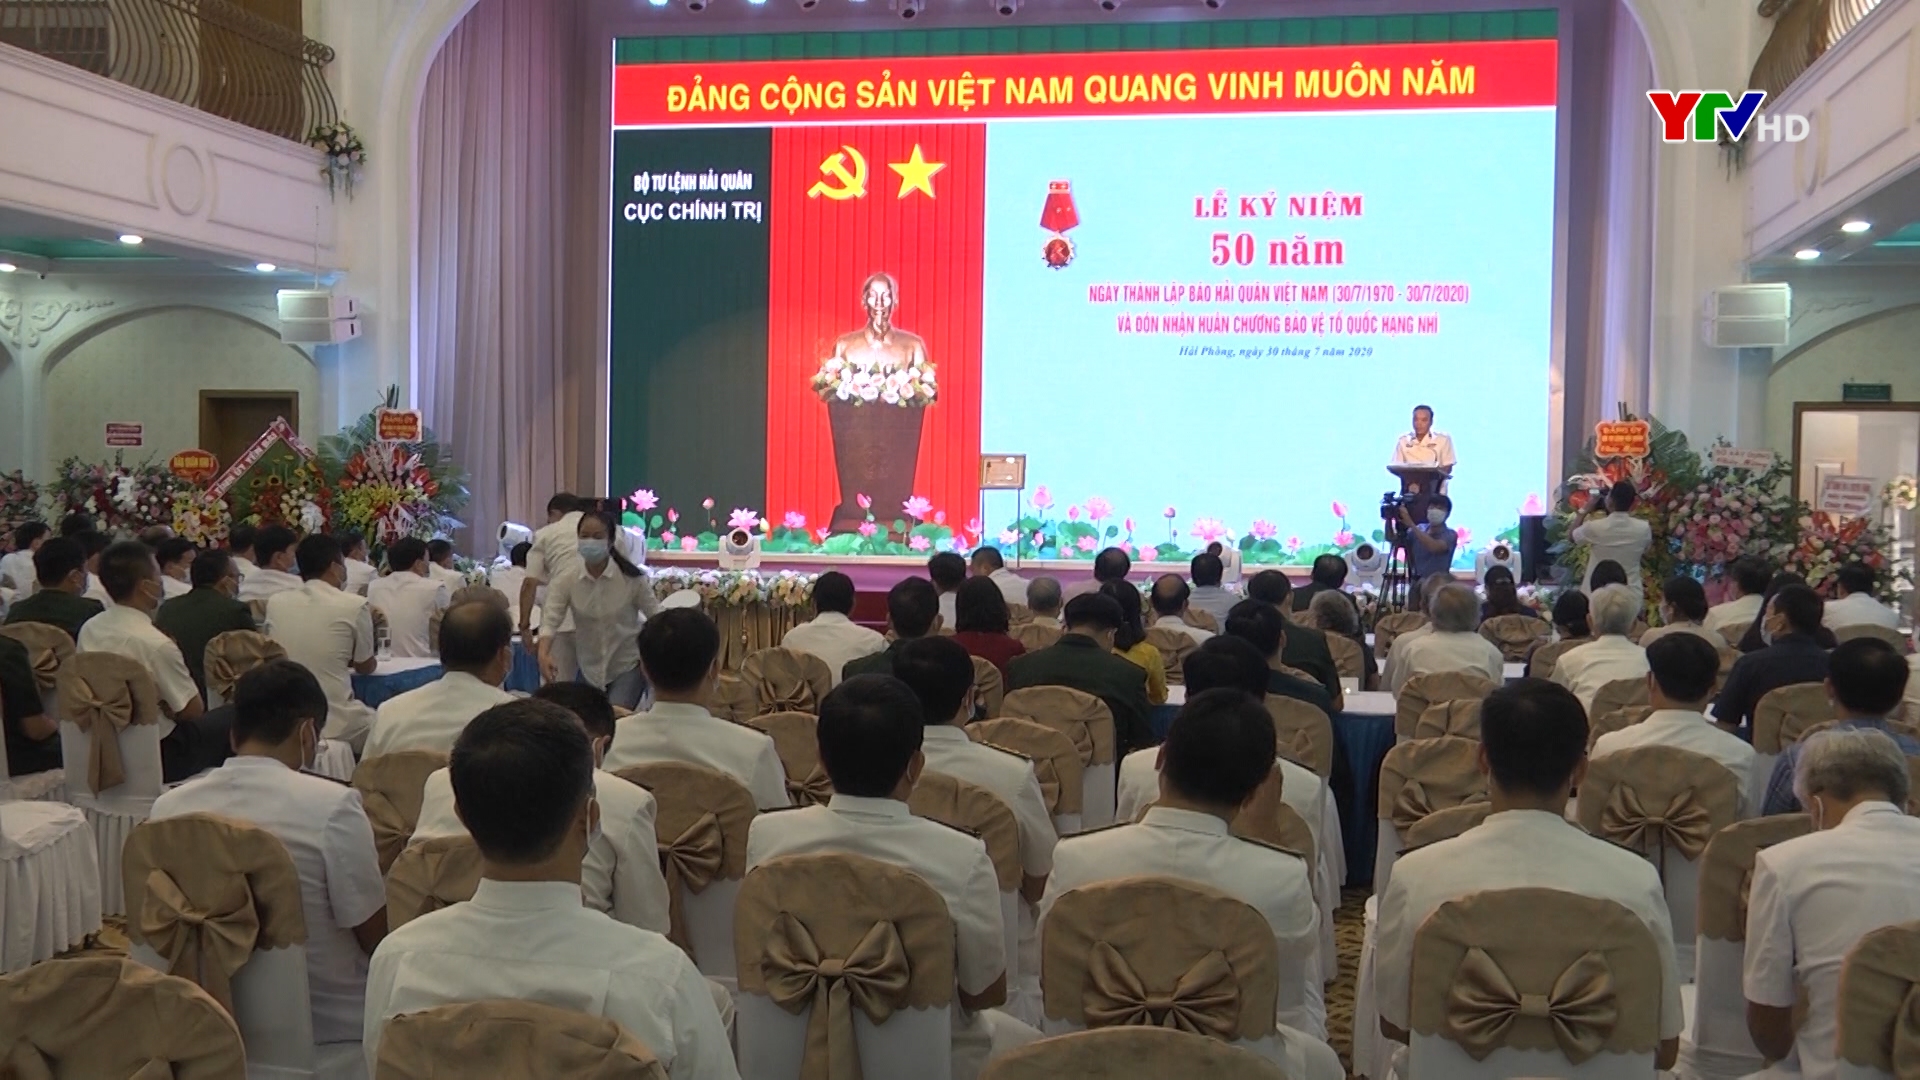 Tỉnh Yên Bái chúc mừng Báo Hải quân Việt Nam nhân kỷ niệm 50 năm ngày thành lập